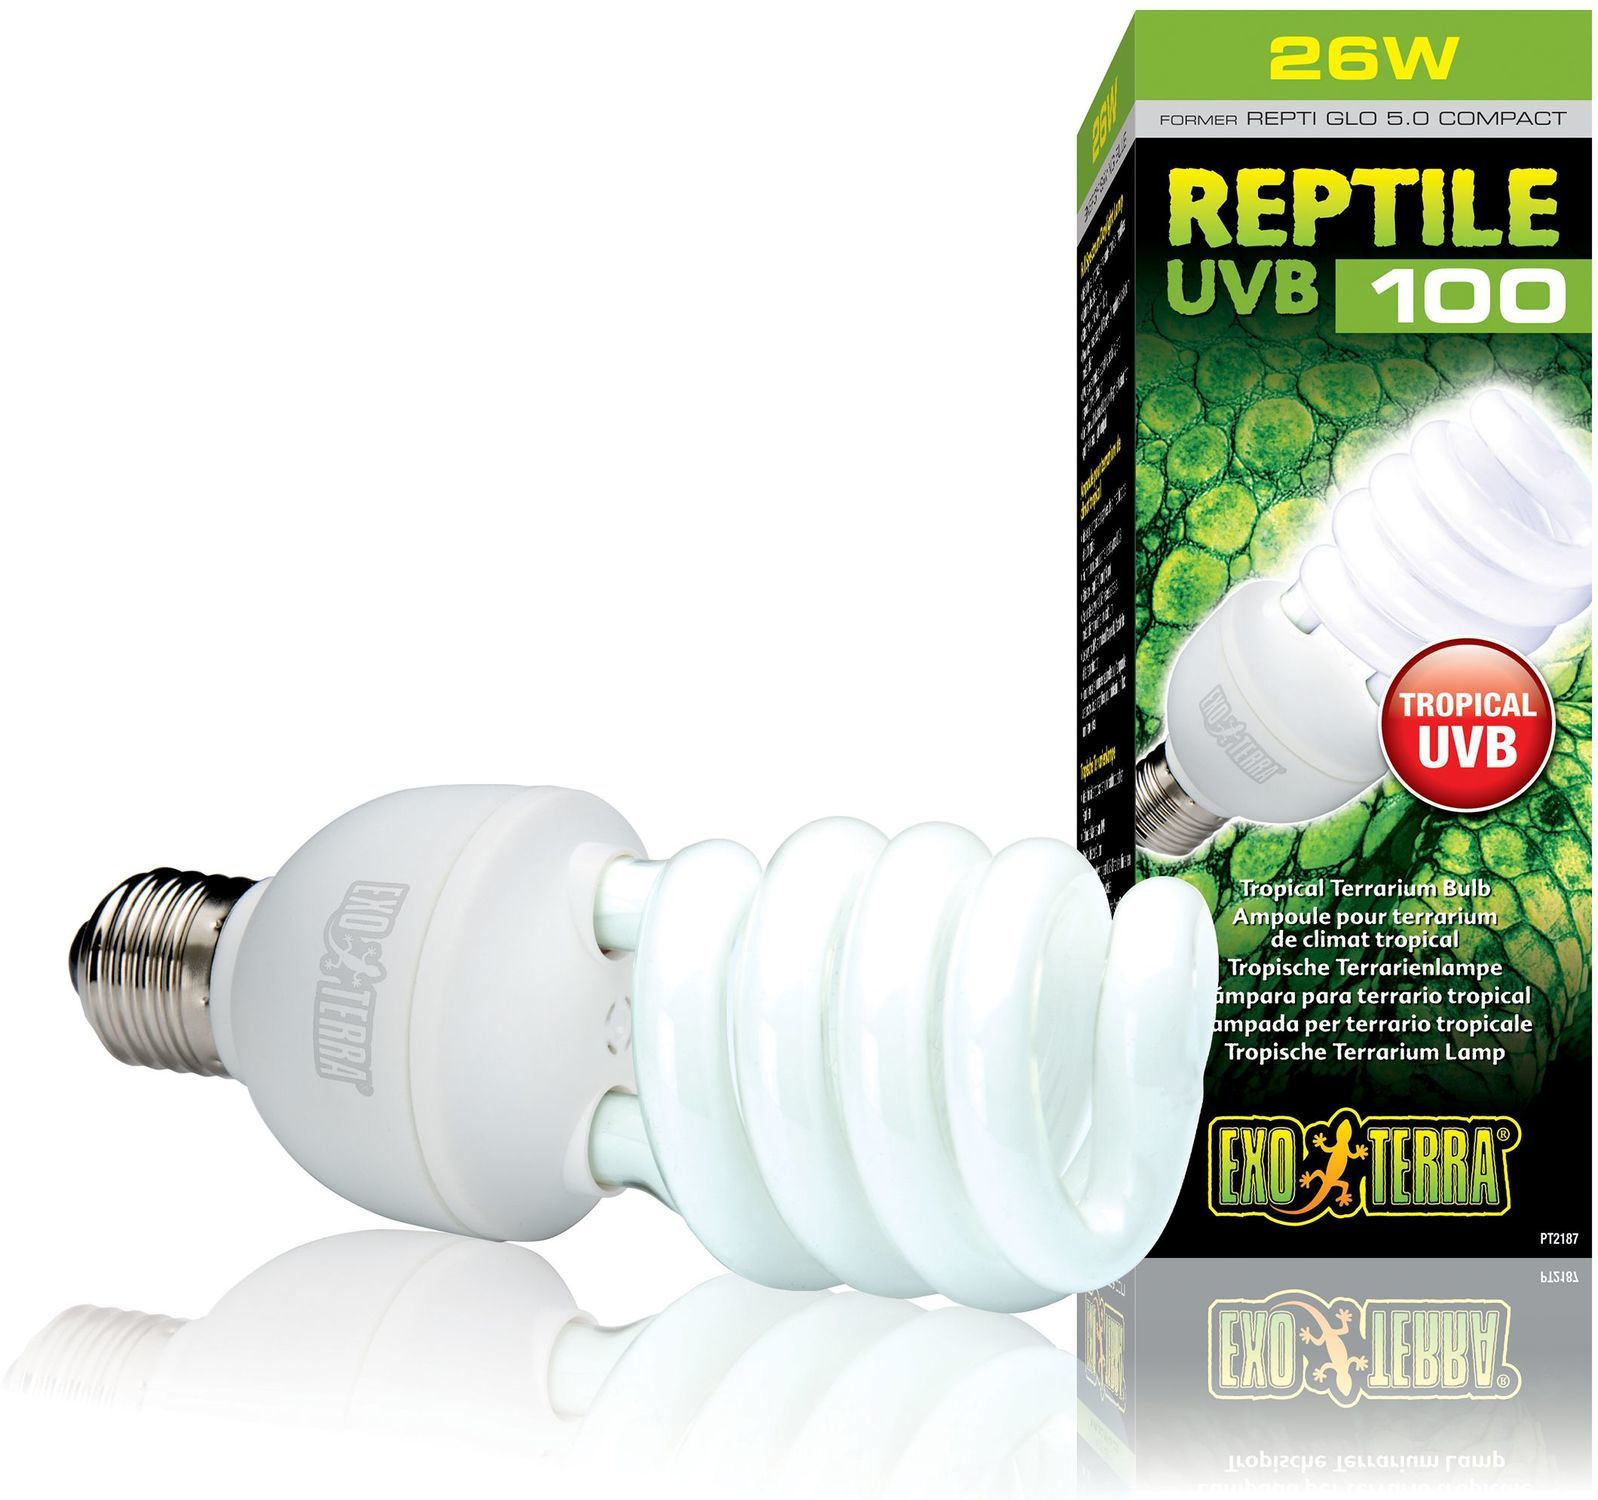 Exo Terra Reptile UVB 100 Compact Bulb pentru terrarium cu climat tropical